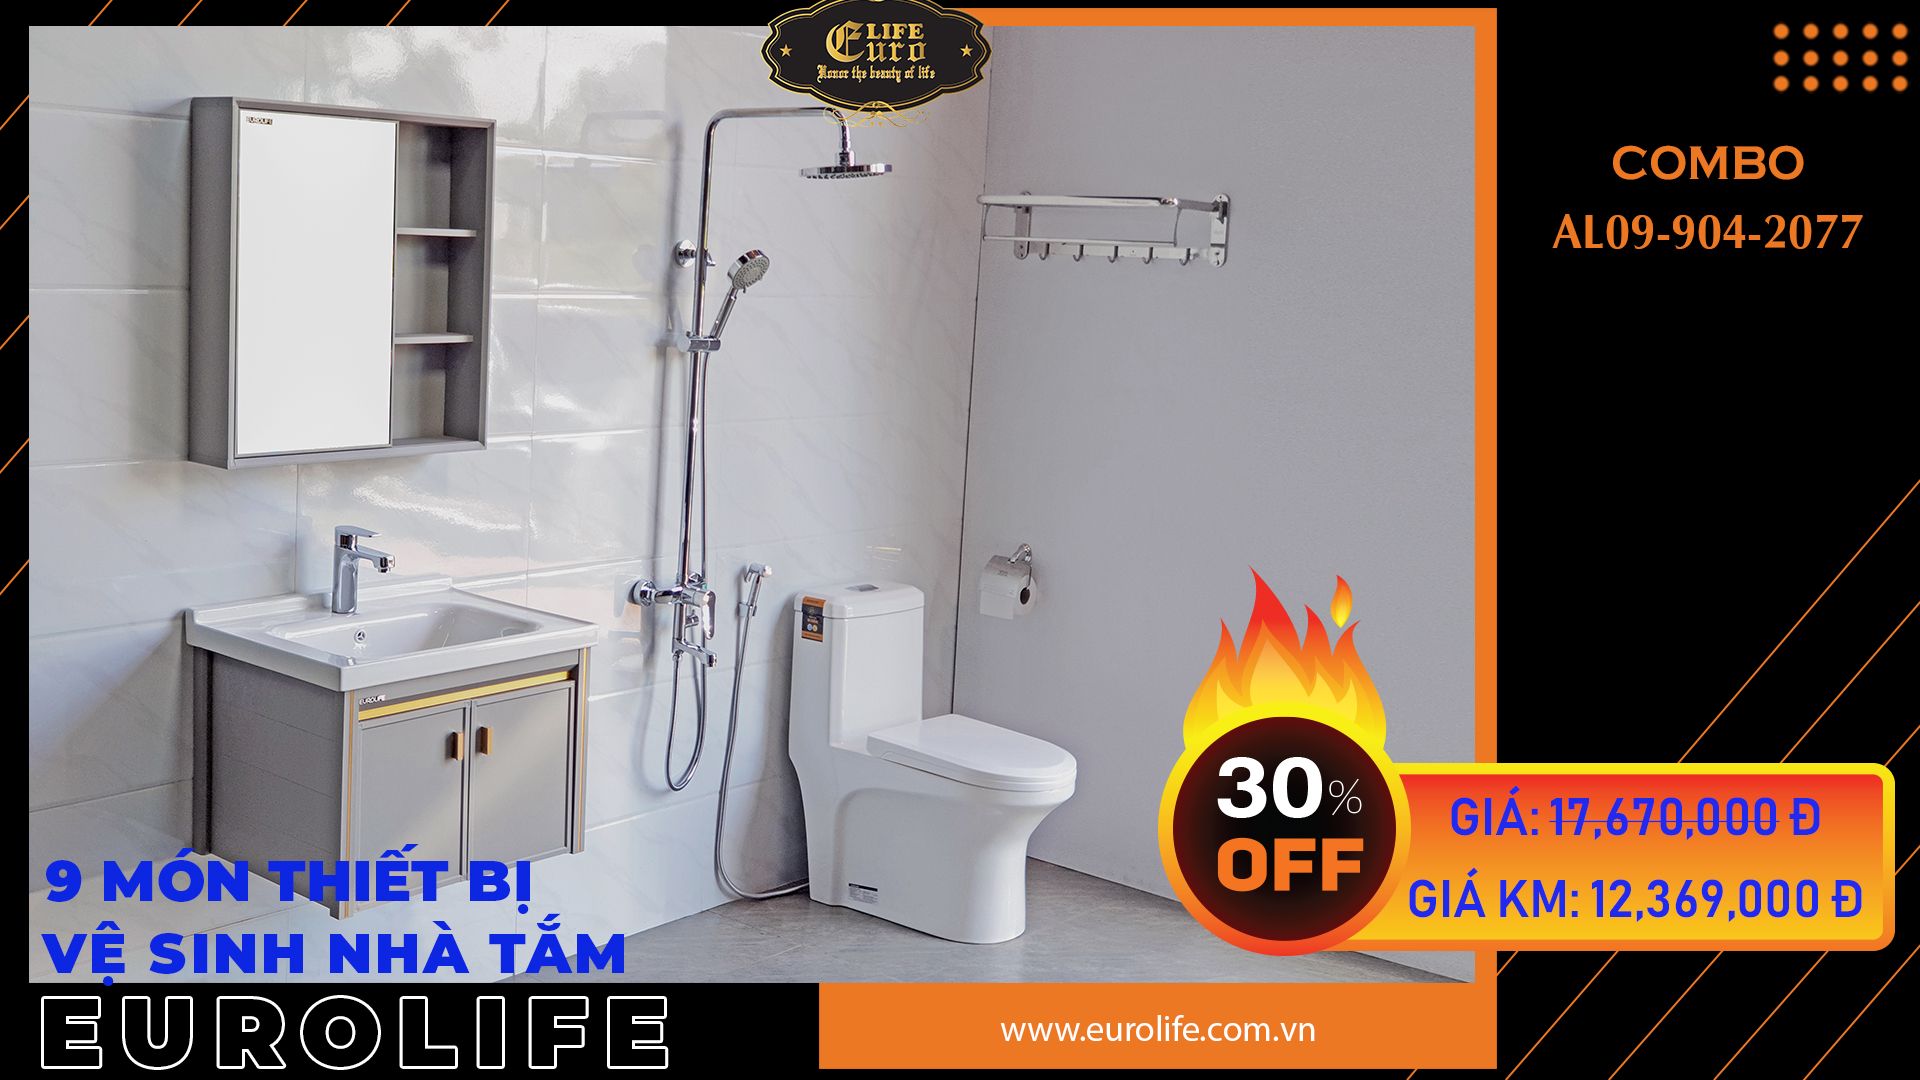  Trọn bộ thiết bị vệ sinh nhà tắm Eurolife CB AL09-S904-2077 